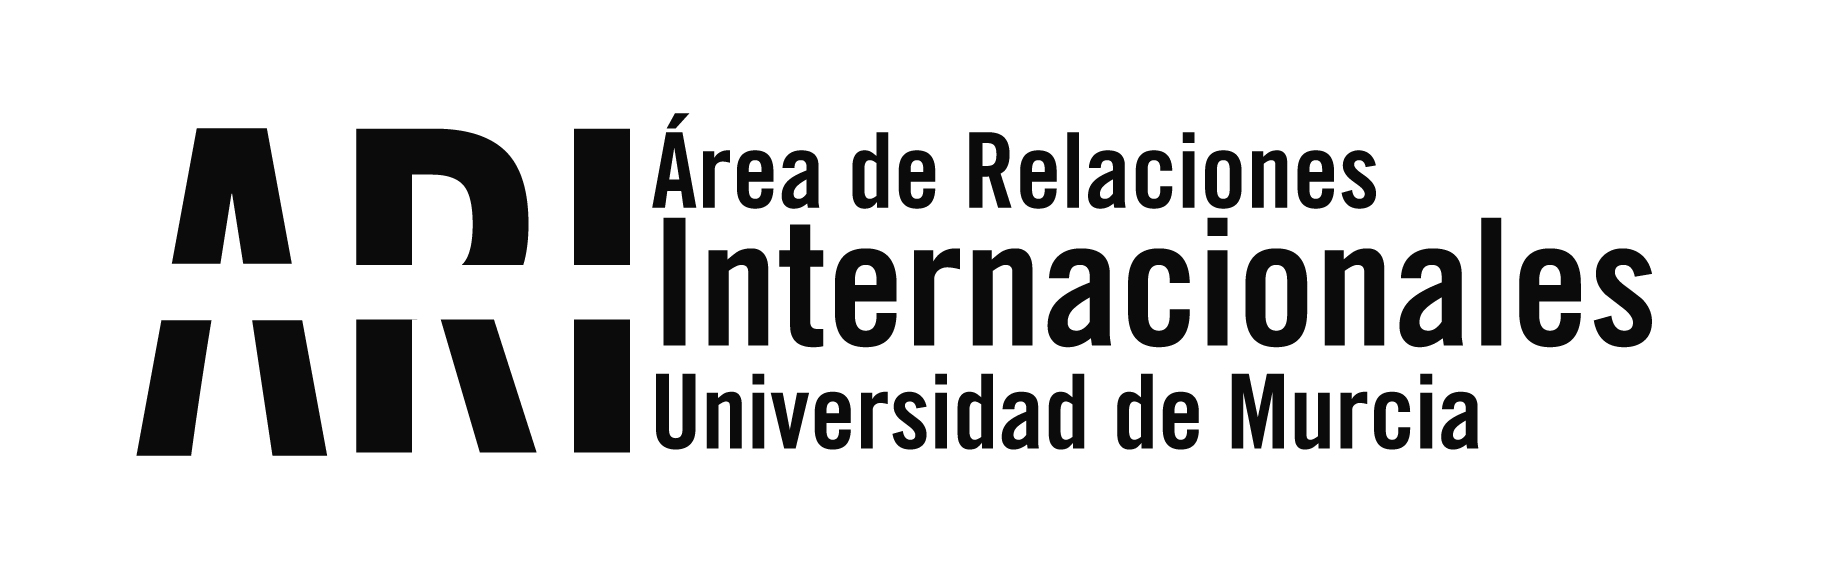 2013.09 Visita UTESA Republica Dominicana - Visitas Institucionales - Área de Relaciones Internacionales